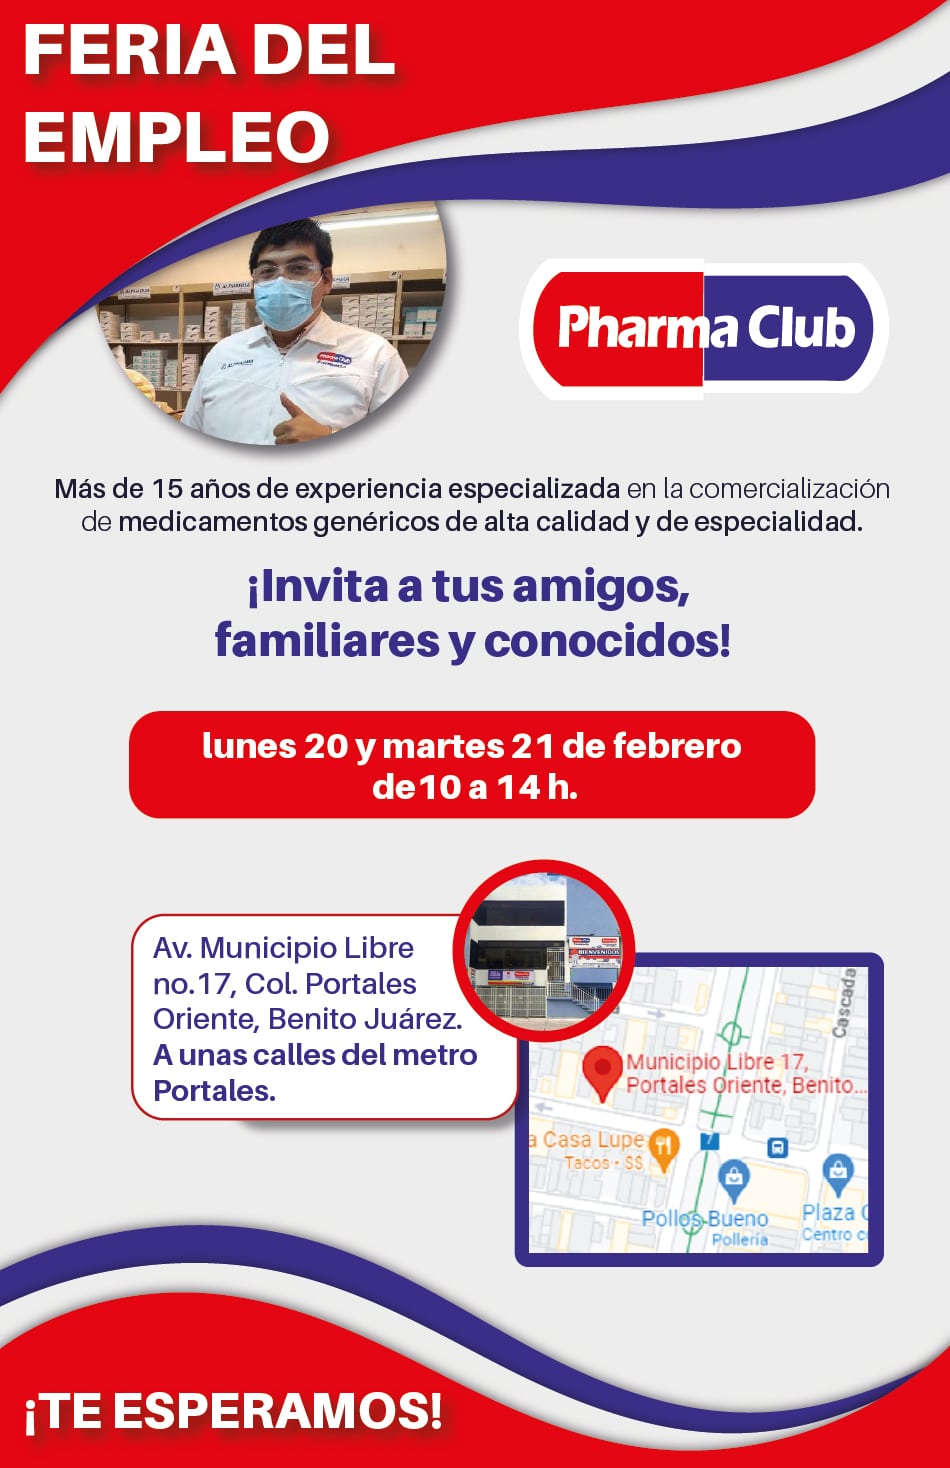 Arriba 34+ imagen pharma club municipio libre